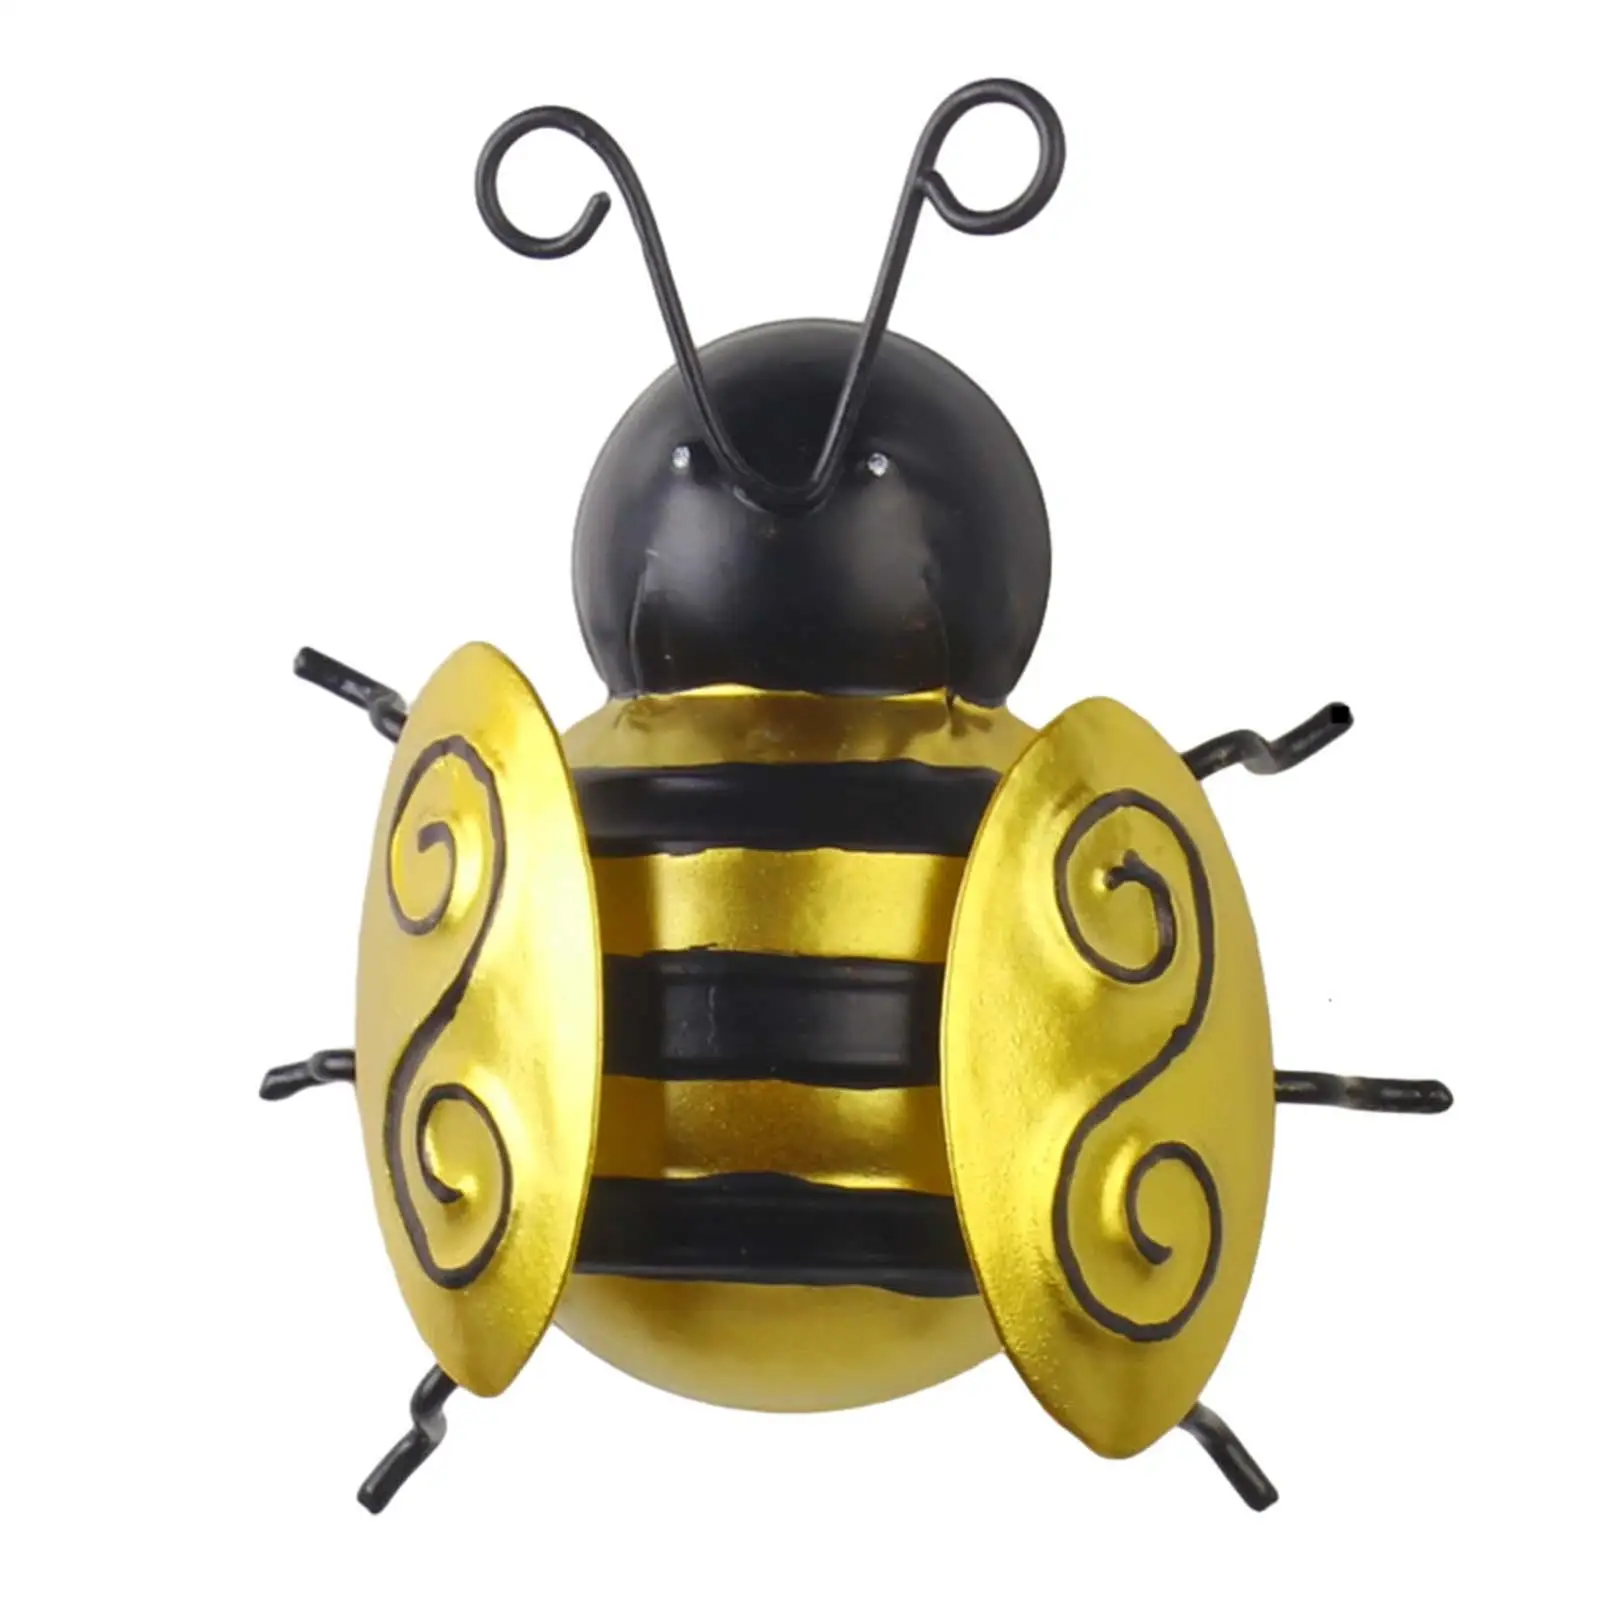 Metal Bee Decoration, Bee Sculpture, Metal Bee Wall Art Decorative, Wall Decoration Bee, for Fence